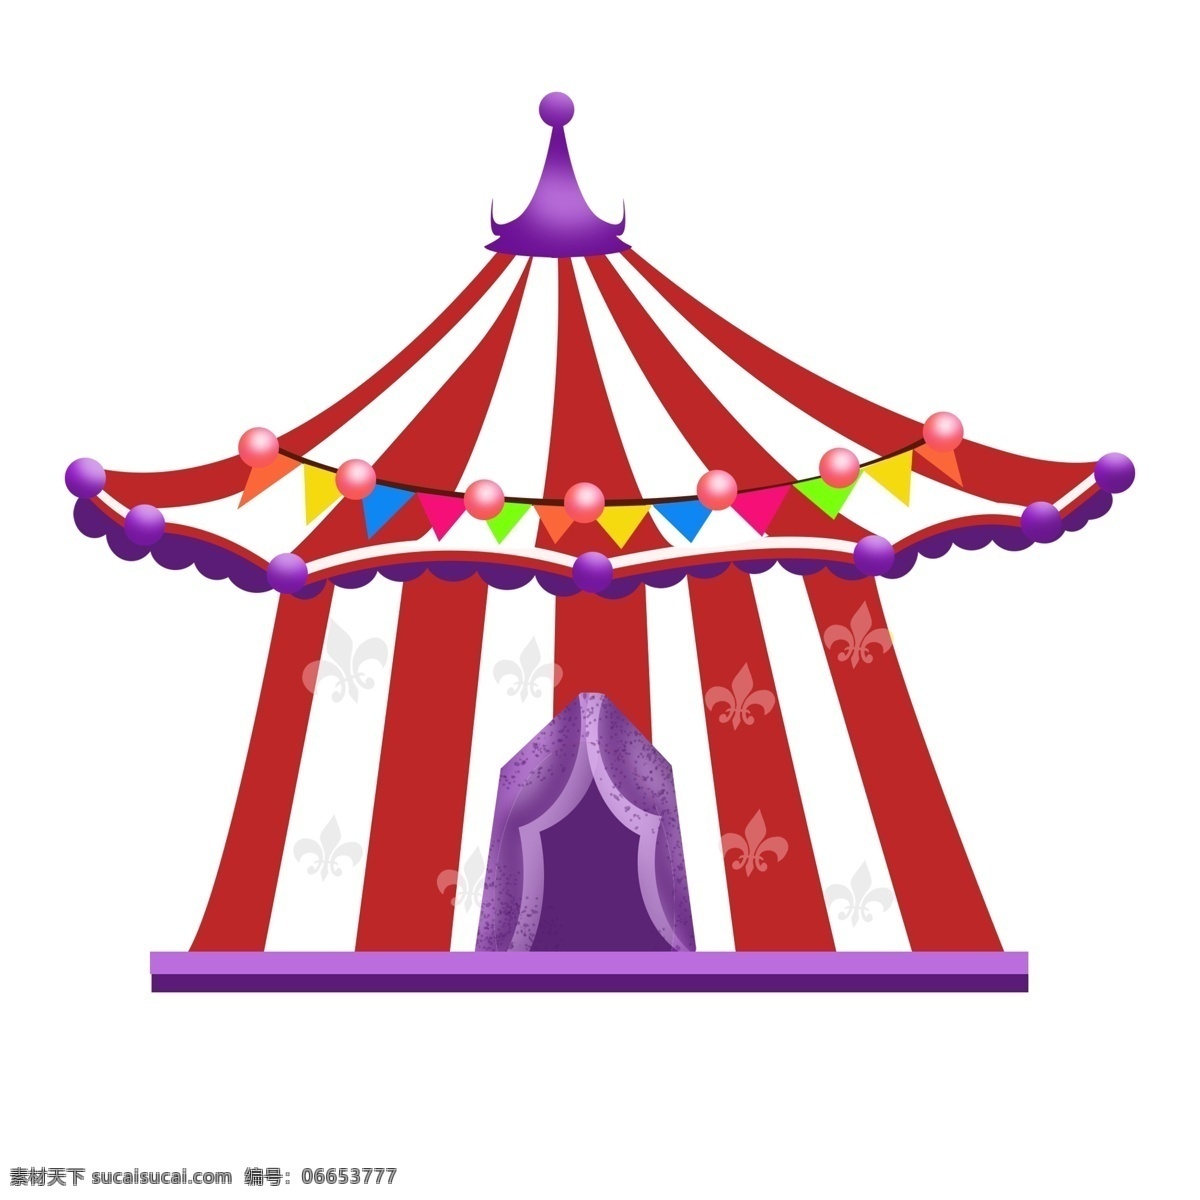 愚人节 元素 装饰 气球 彩带 马戏团 小丑 表演 帐篷 装饰元素 气球彩带